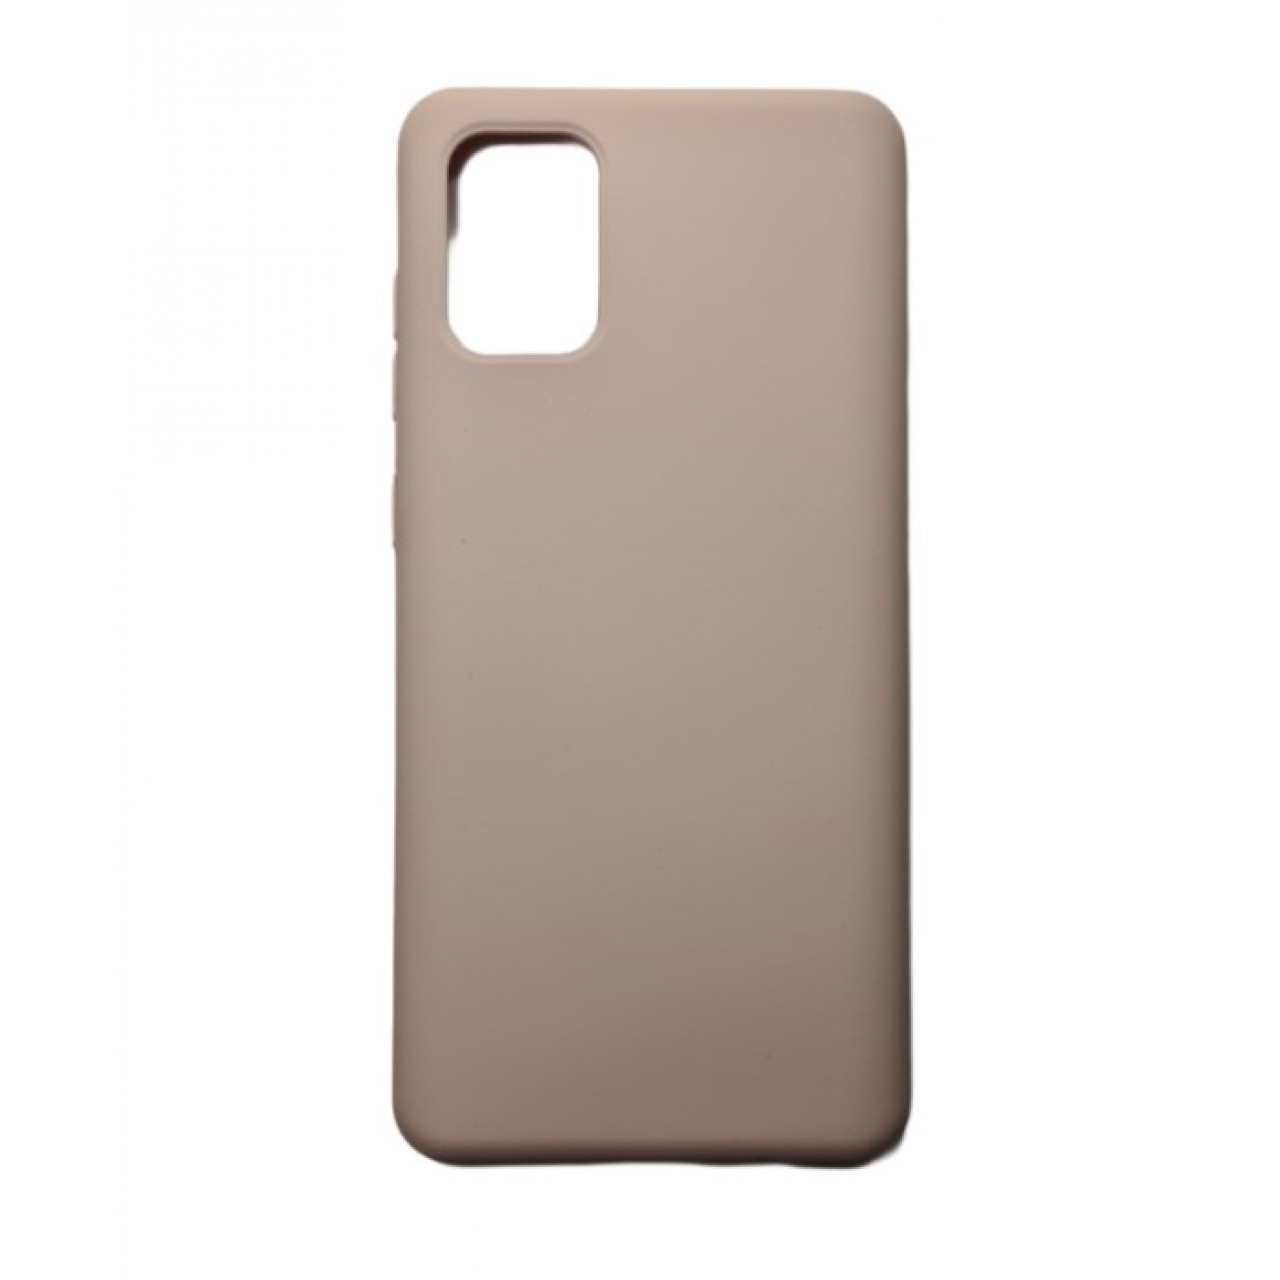 Θήκη Samsung Galaxy A71 Silicone soft-touch cover - 5084 - Μπεζ - ΟΕΜ